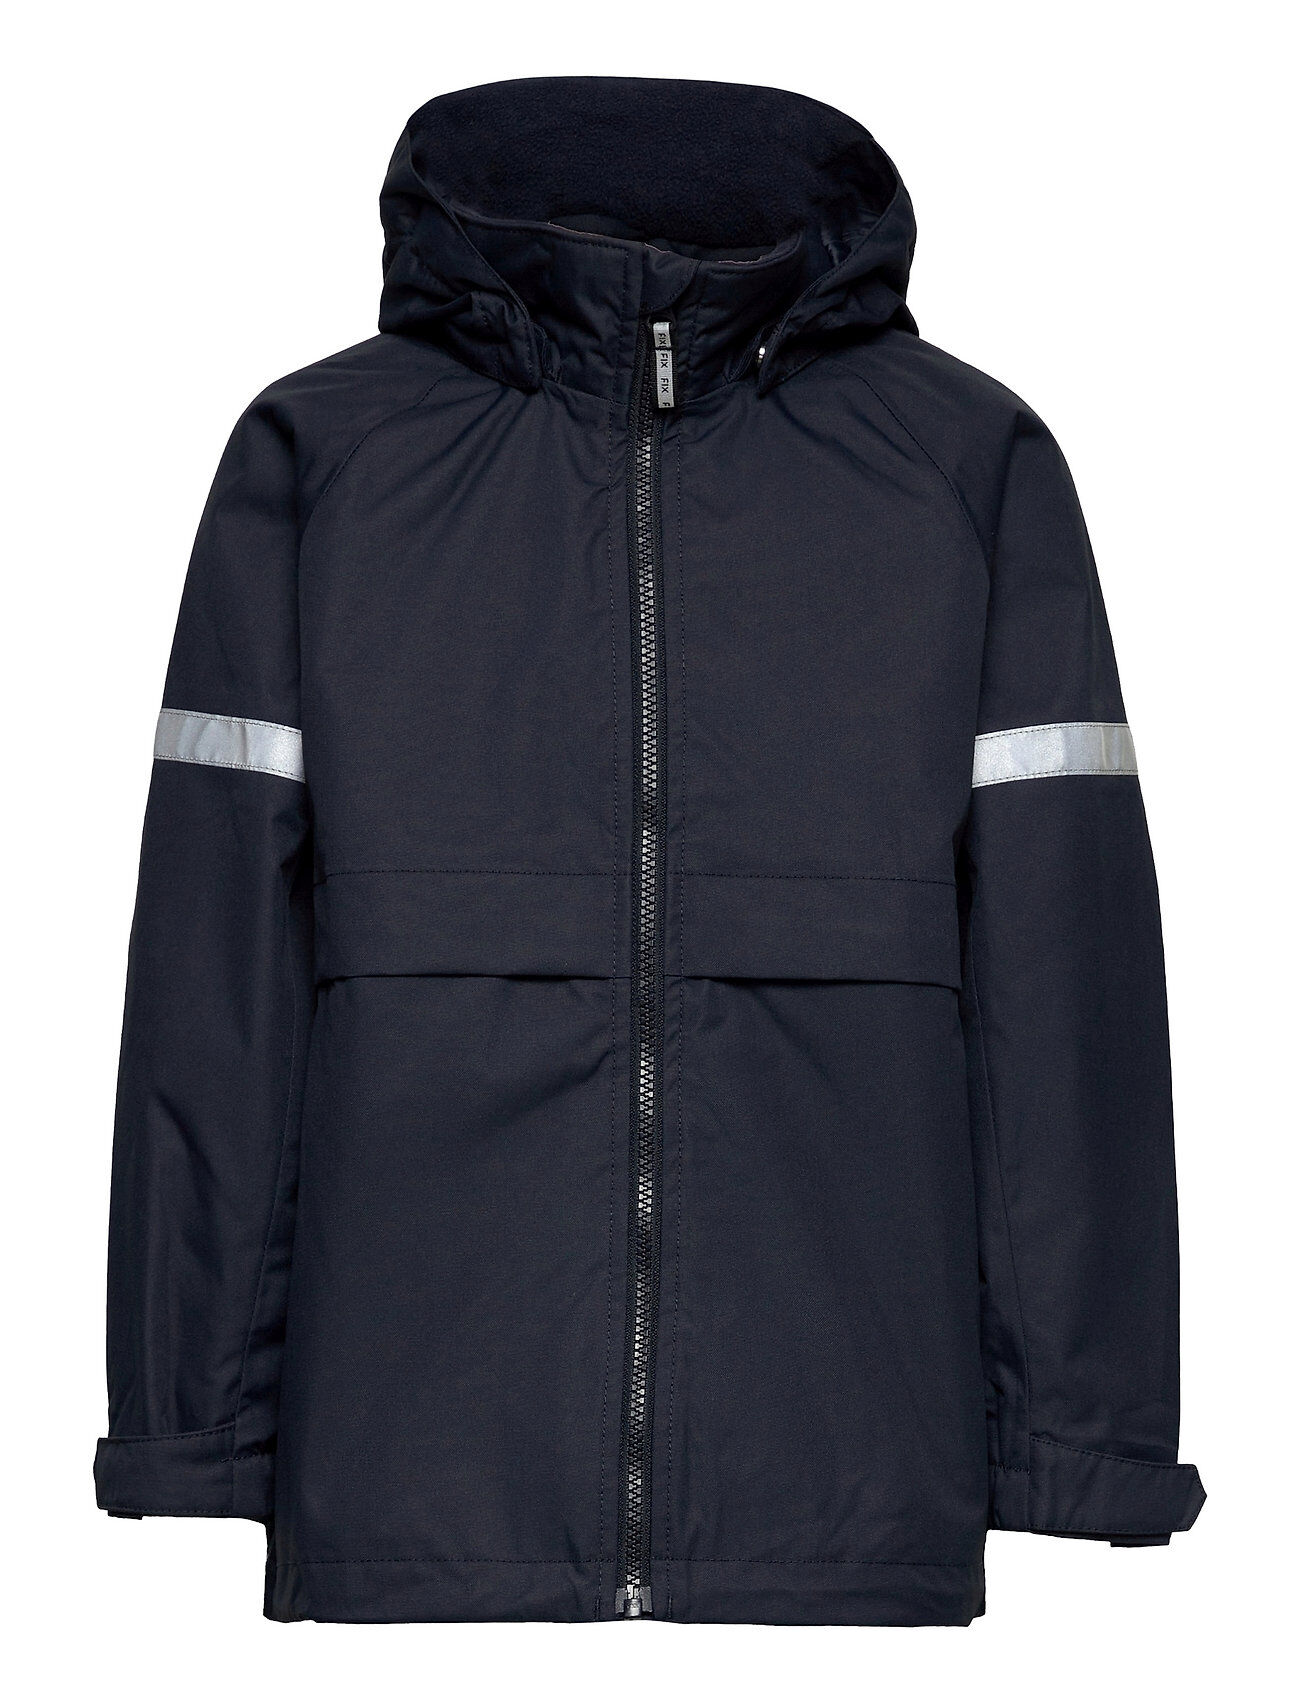 Lindex Jacket Fix Outerwear Snow/ski Clothing Snow/ski Jacket Blå Lindex